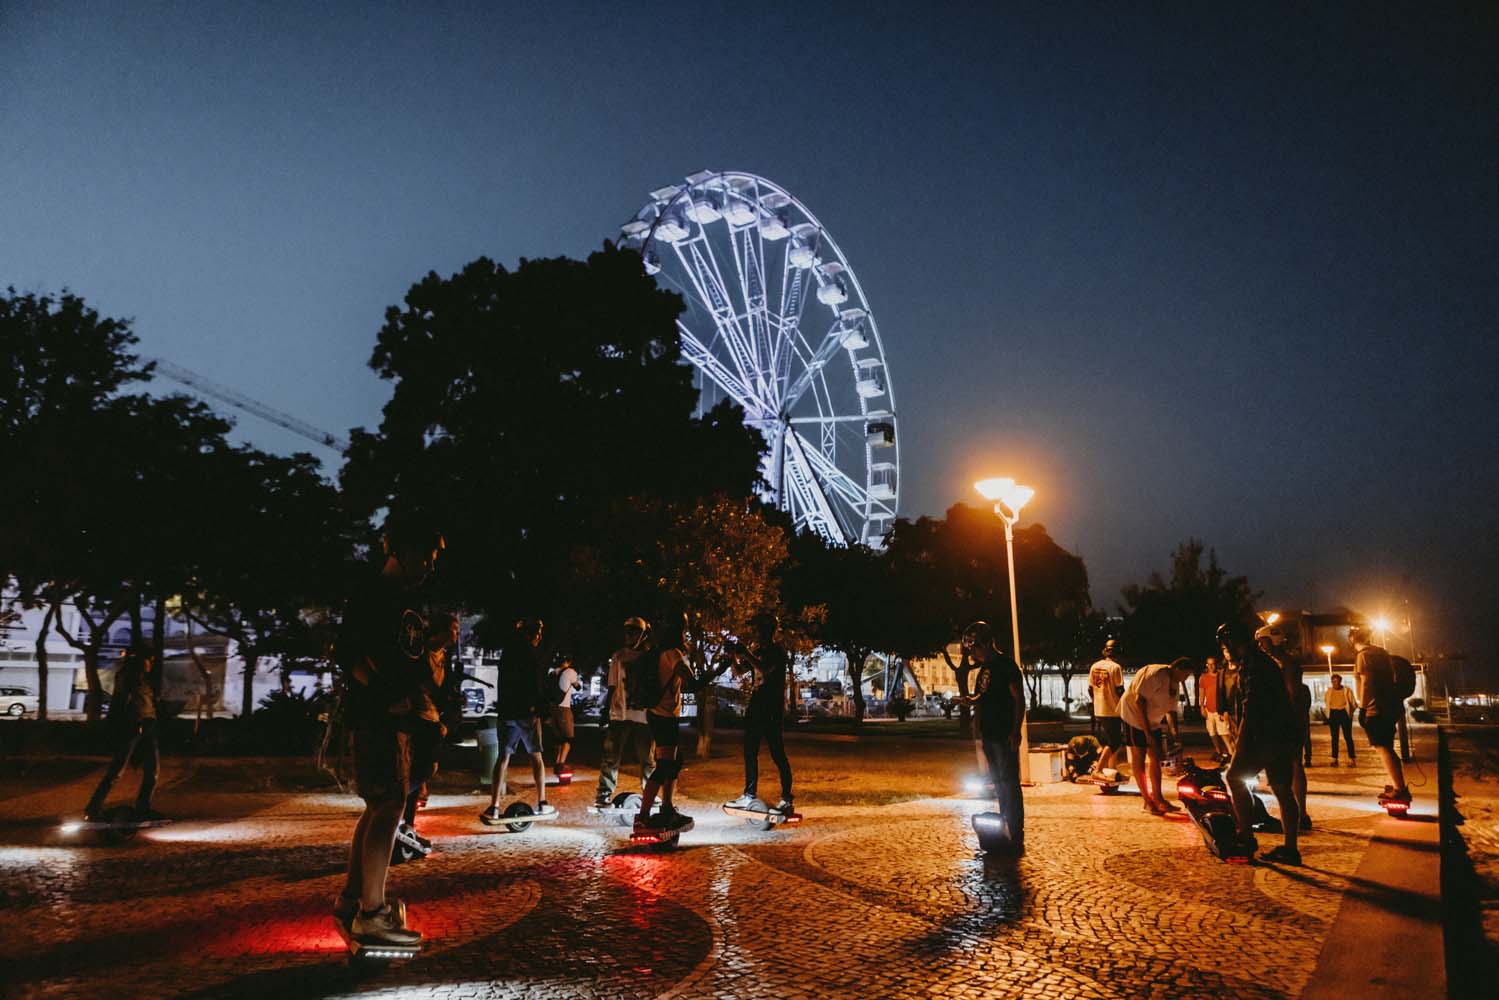 Night riding at the Onewheel Algarve Tour 2022. Courtesy photo